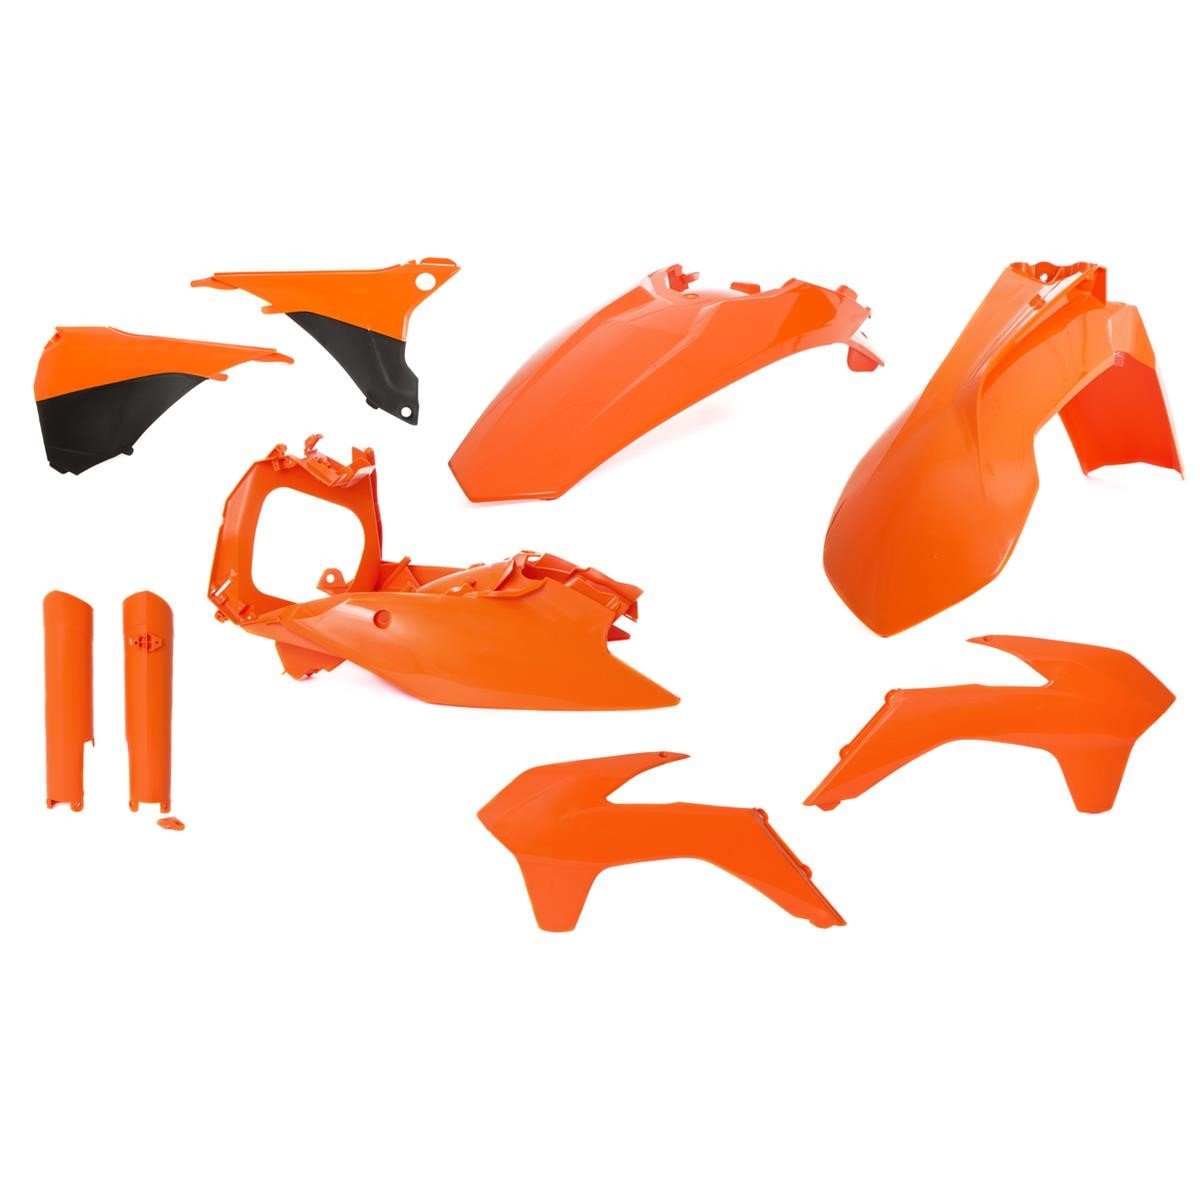 Acerbis Kit Plastiche completo Full-Kit KTM EXC/EXC-F 14-15, Arancione